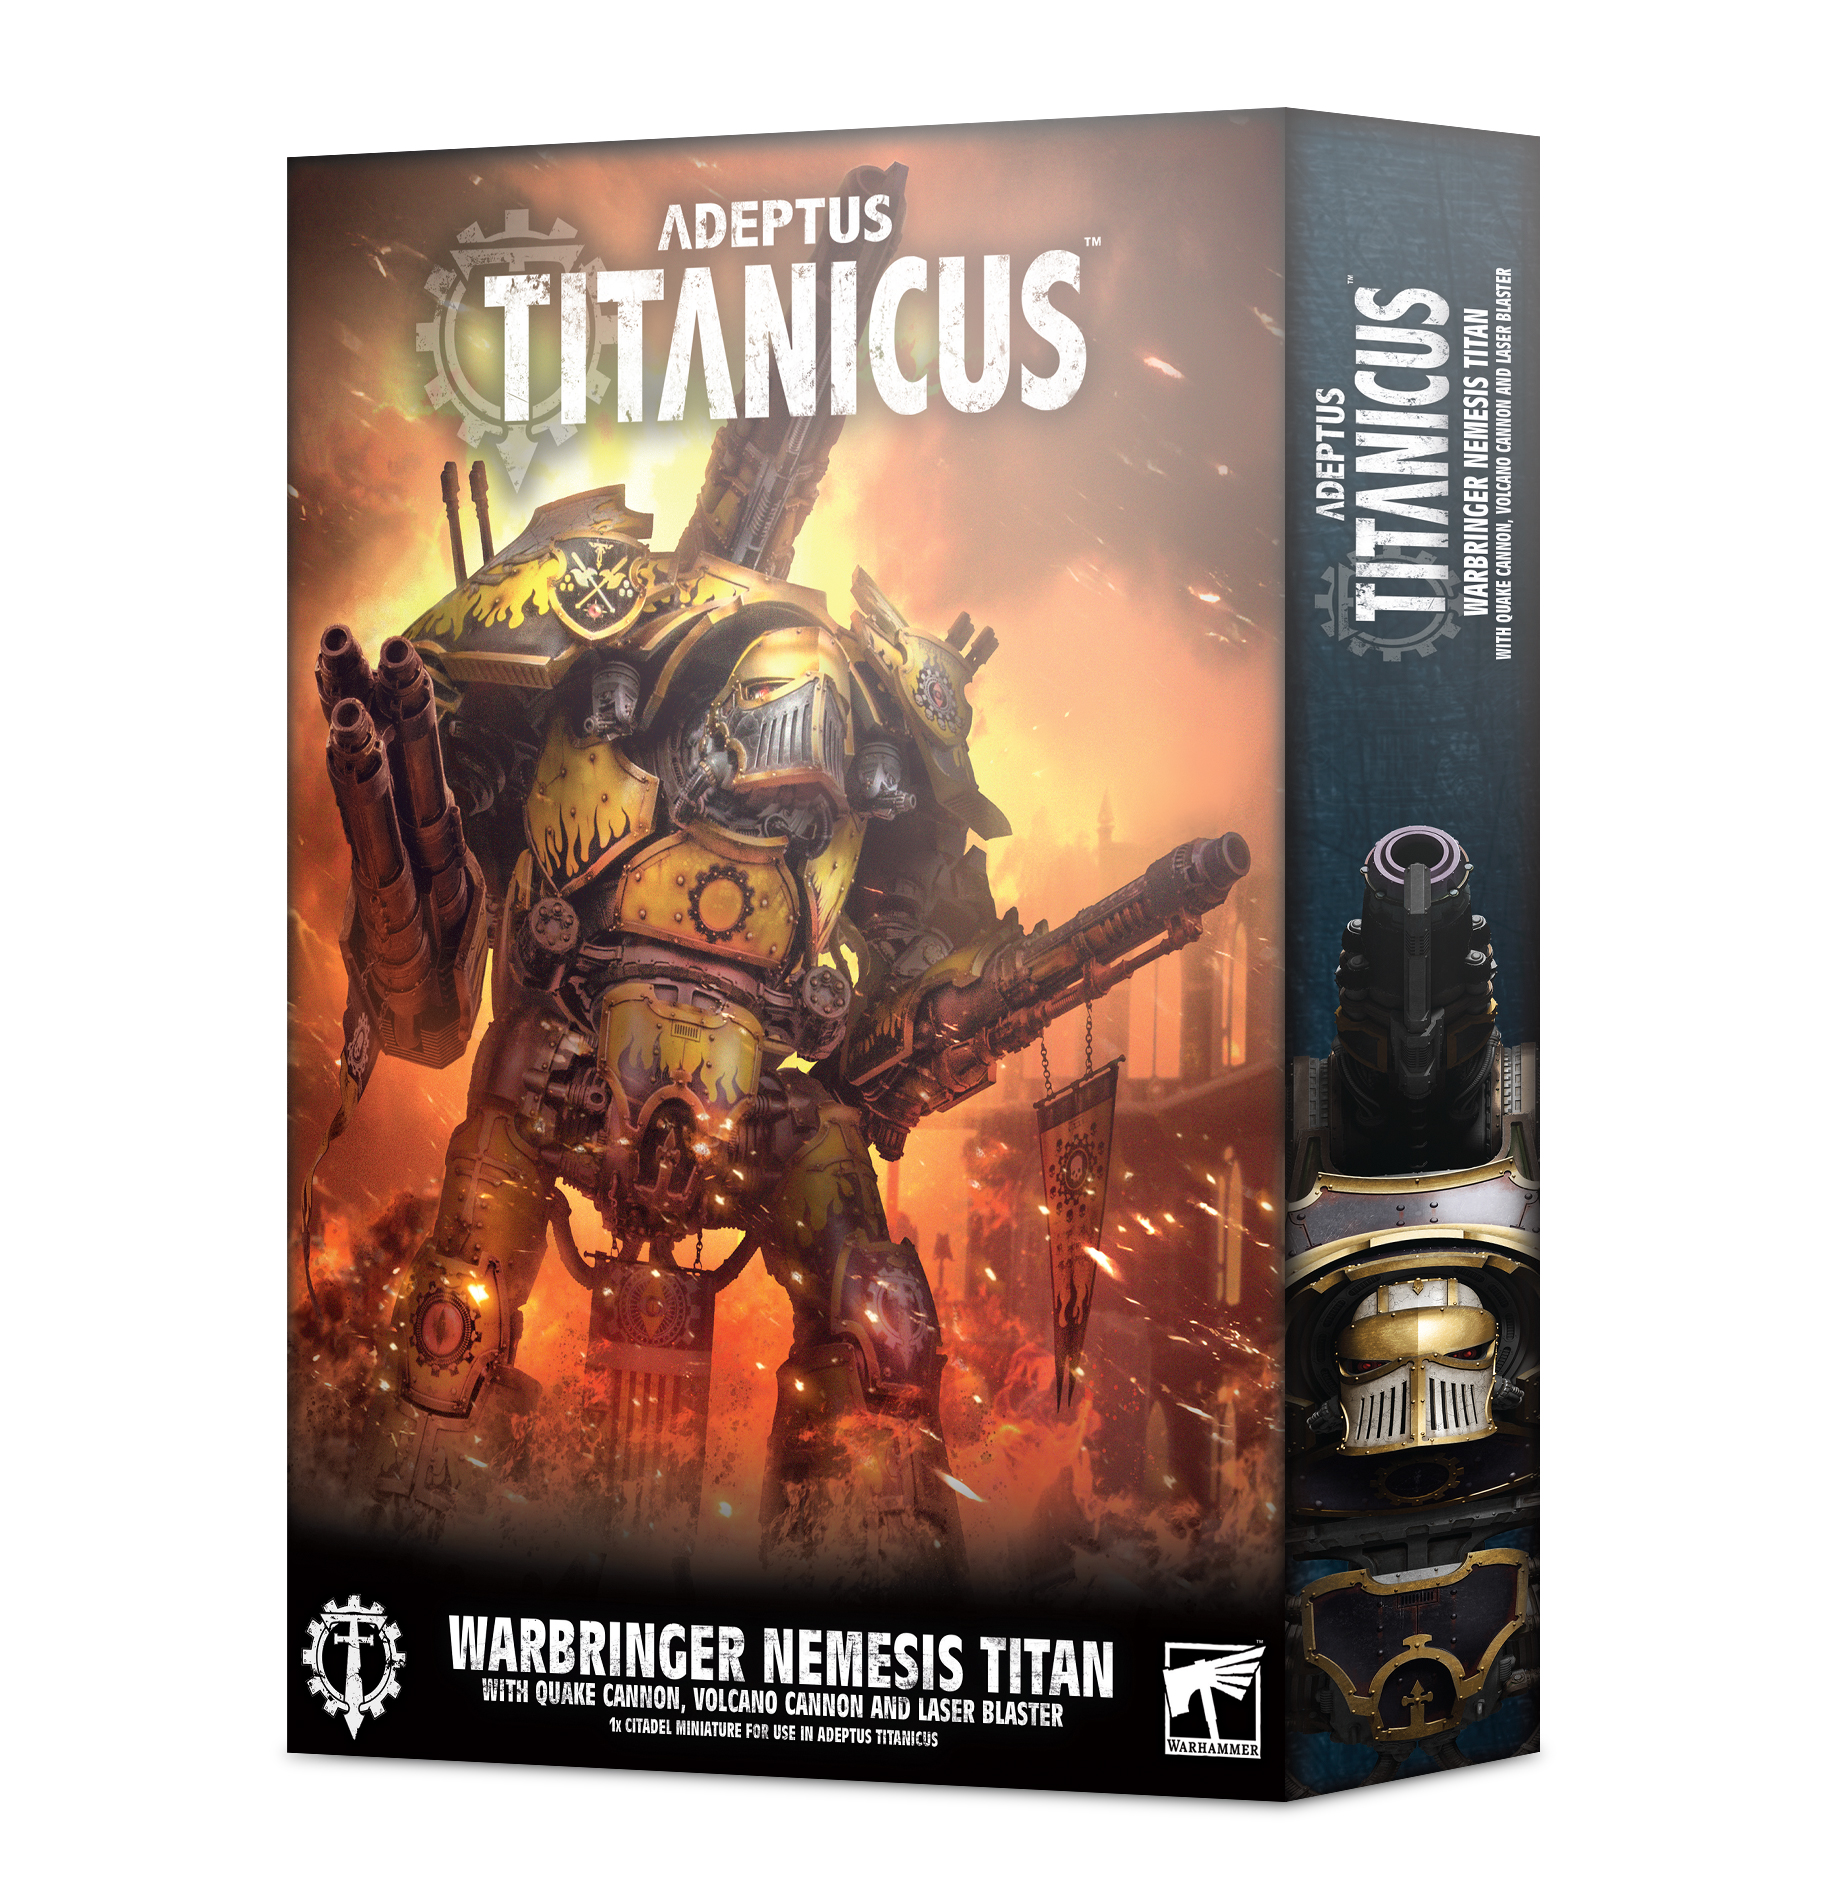 Adeptus Titanicus Warbringer Nemesis Titan With Quake Cannon